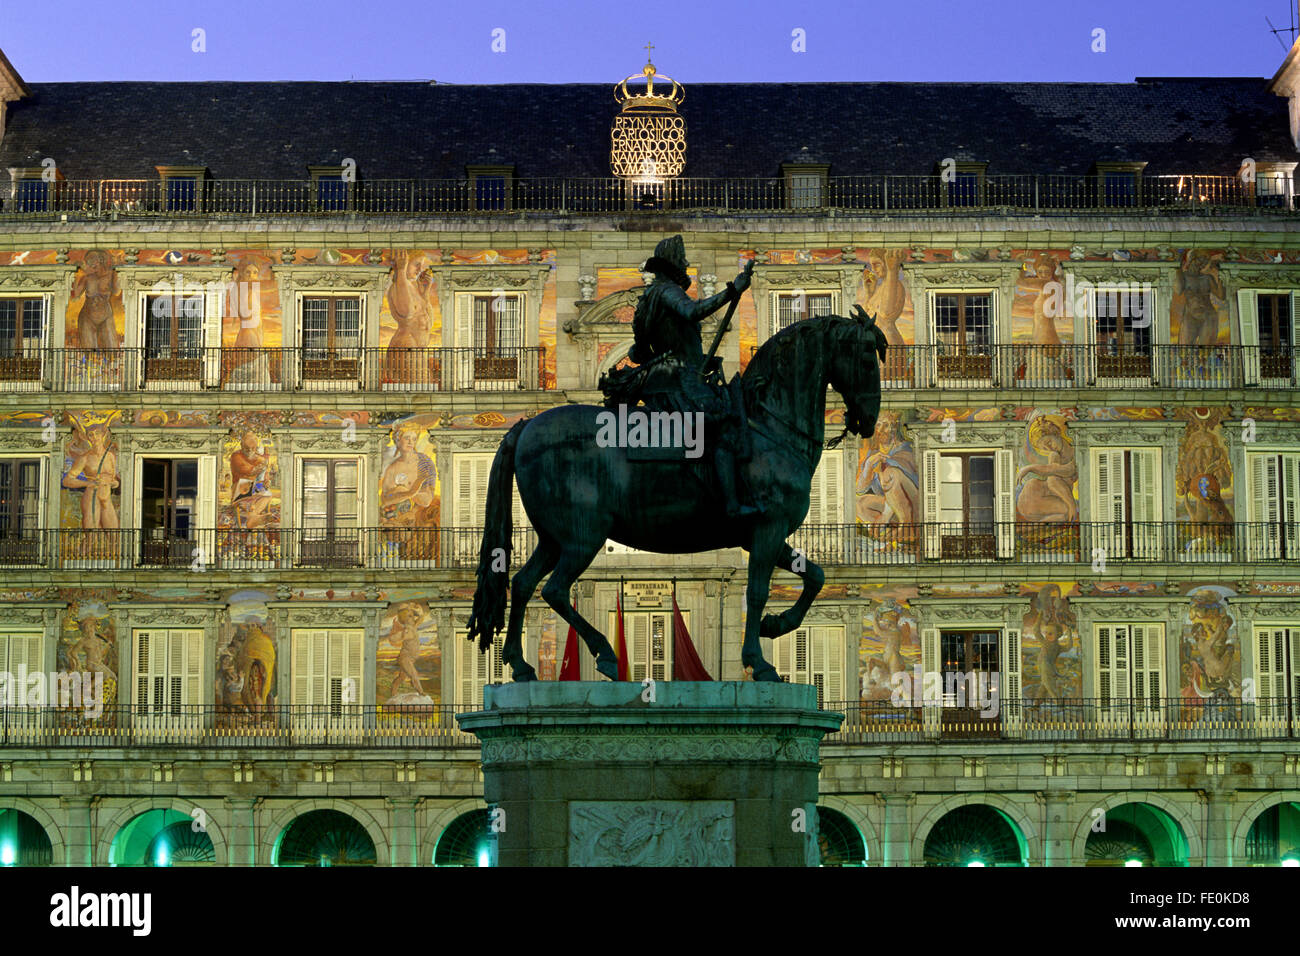 Espagne, Madrid, Plaza Mayor, statue du roi Philippe III et Casa de la Panaderia la nuit Banque D'Images